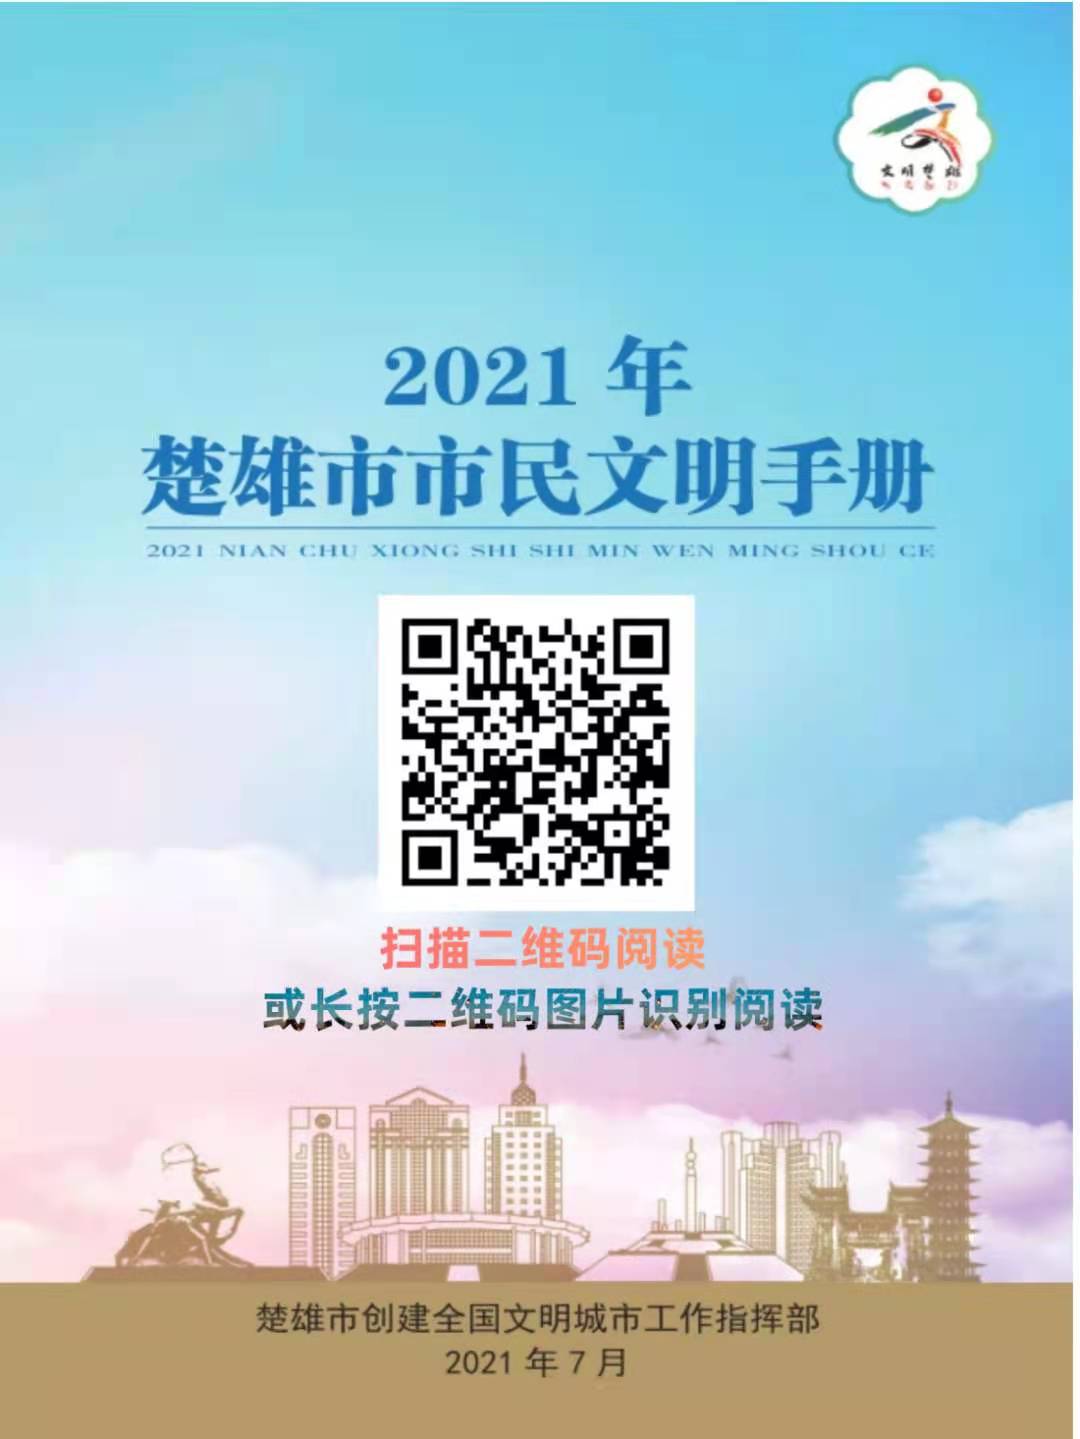 2021年楚雄市市民文明手册电子书